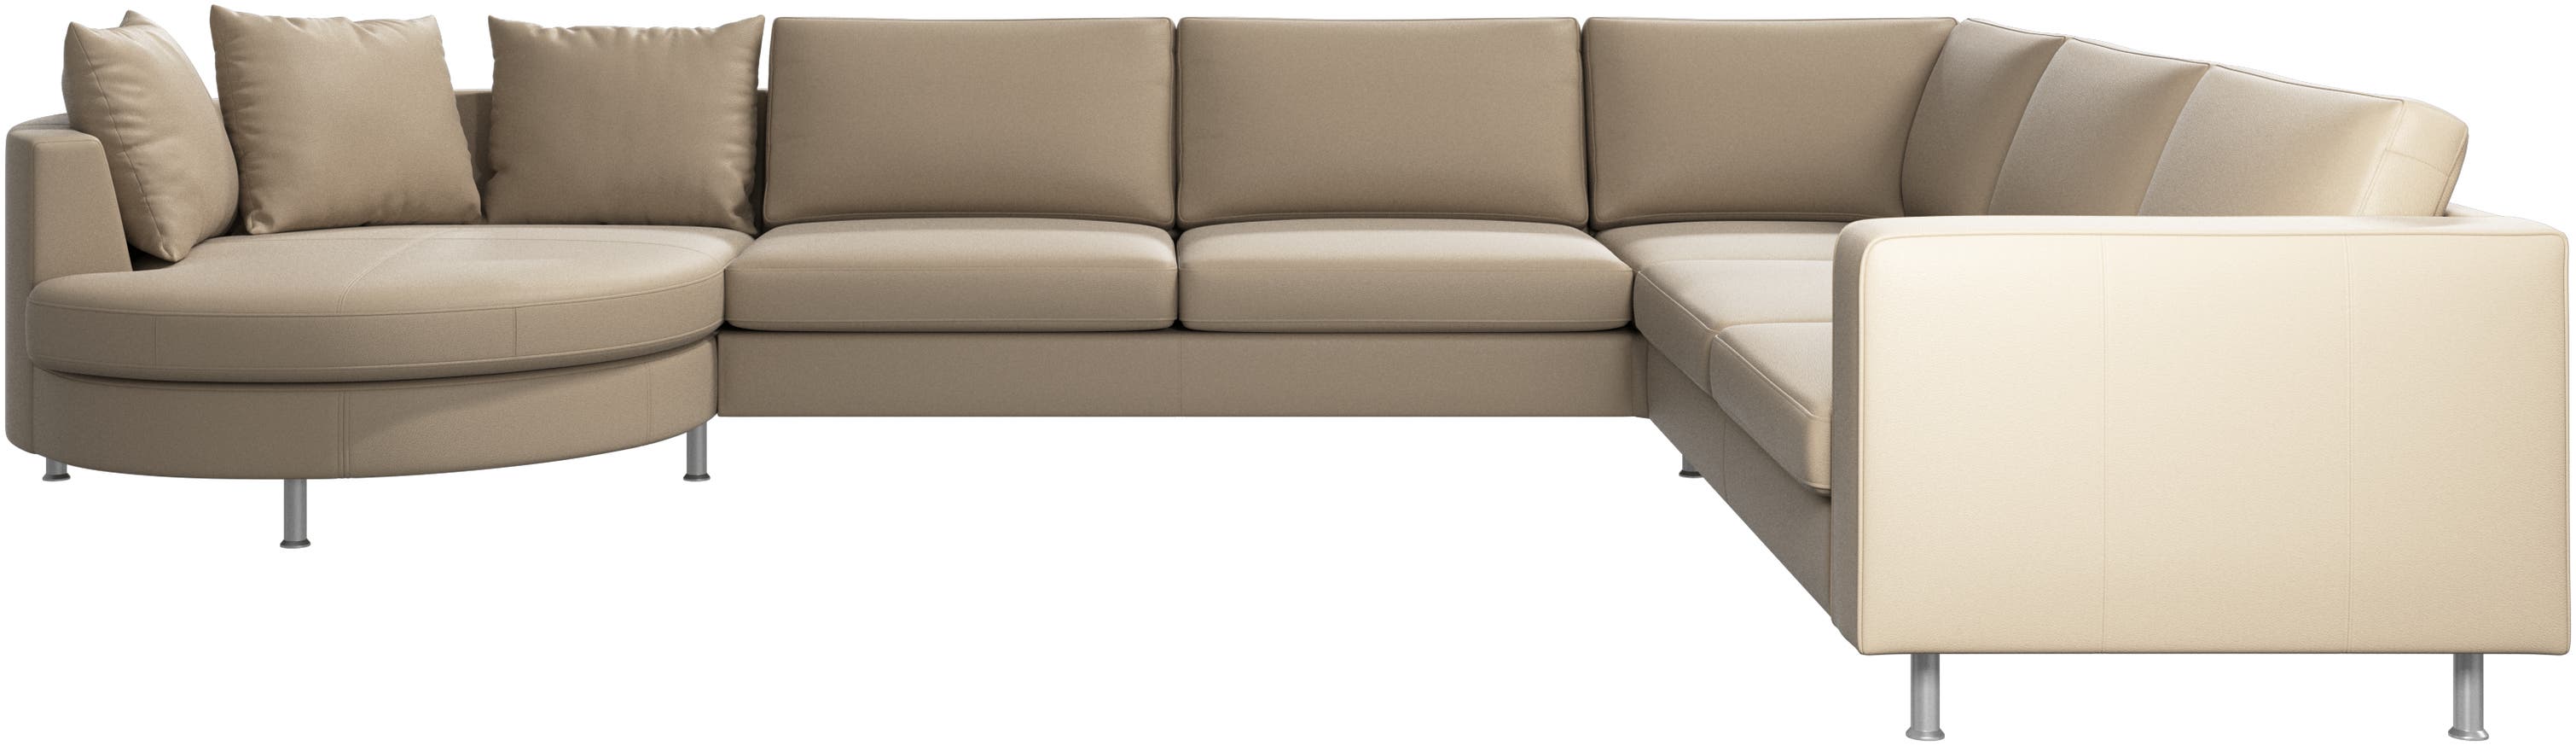 Indivi corner sofa with round resting unit